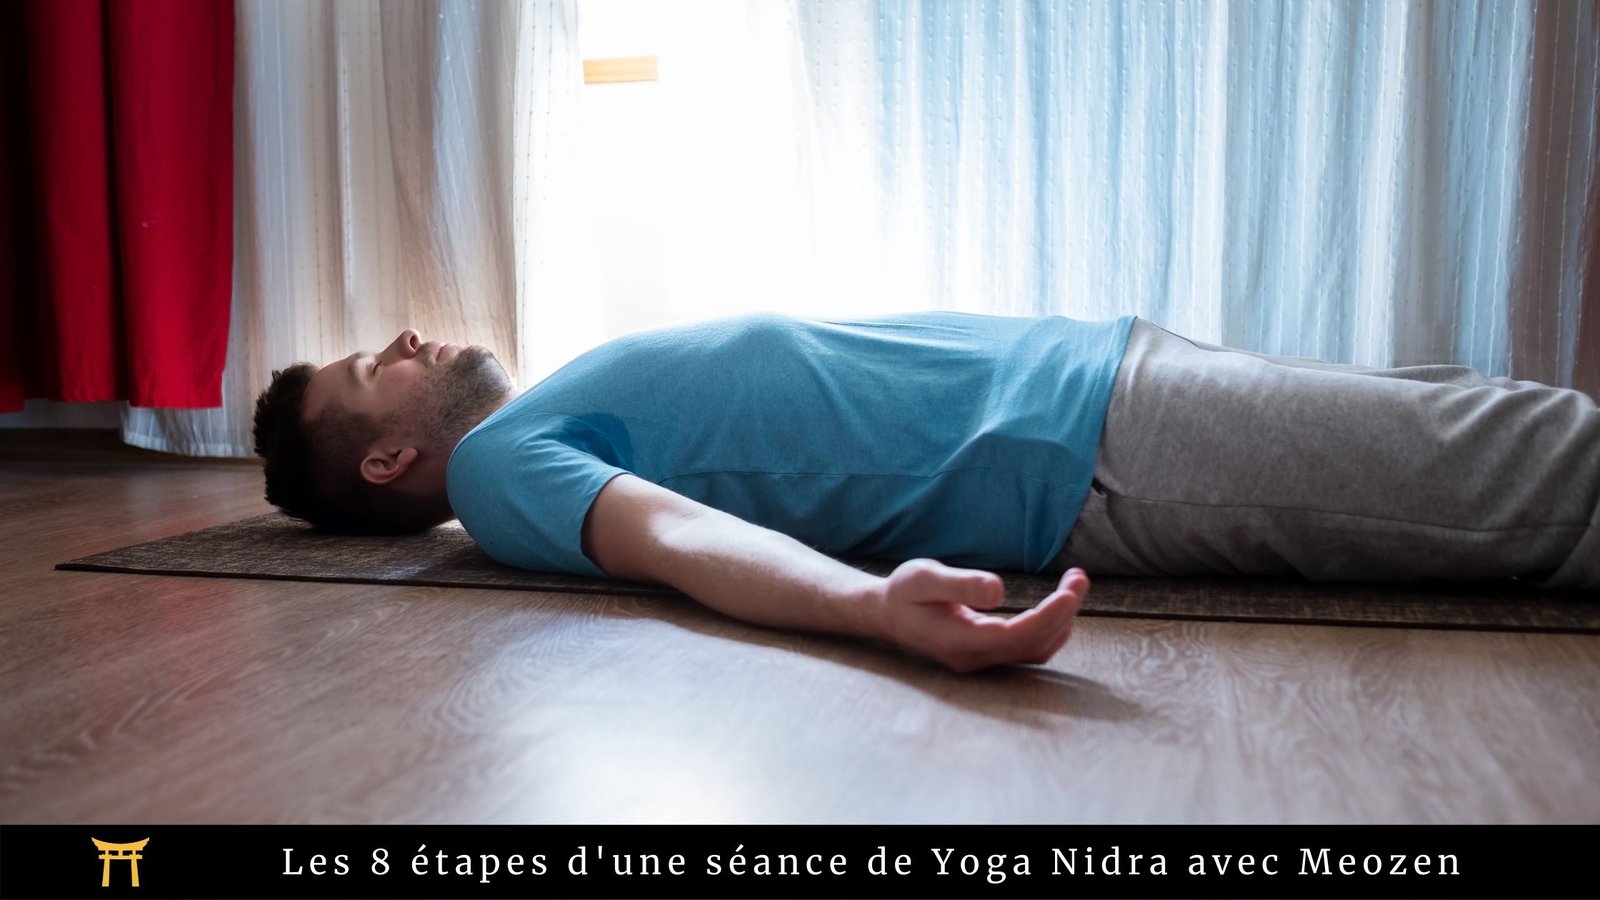 Accessoires yoga : Quel matériel nécessaire à la pratique du yoga ? - Meozen